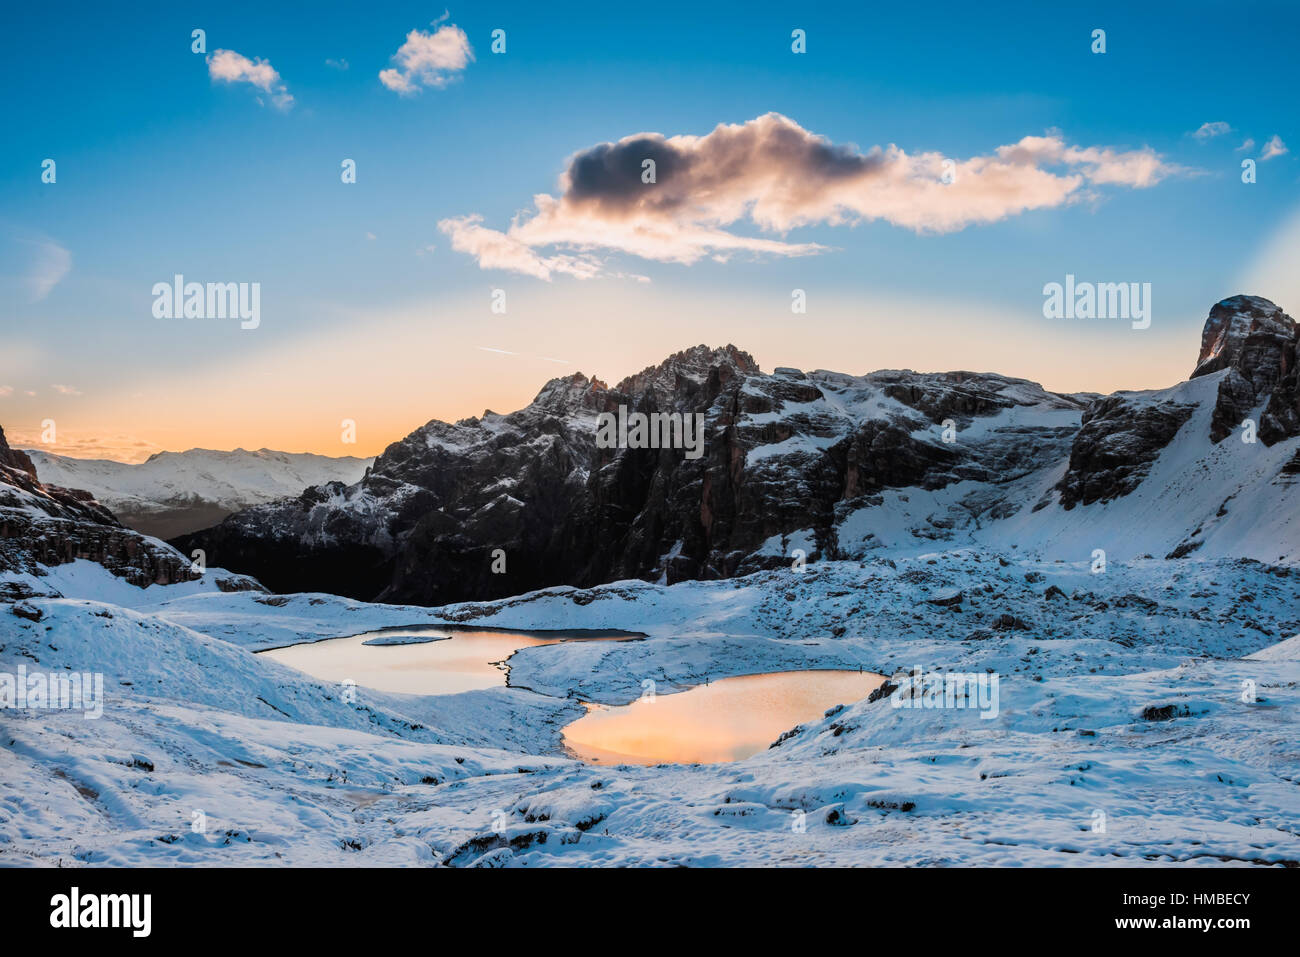 La neve e il lago di montagna Lago dei piani nei pressi di Drei Zinnen o le cime, Italia Alpi Dolomiti Foto Stock